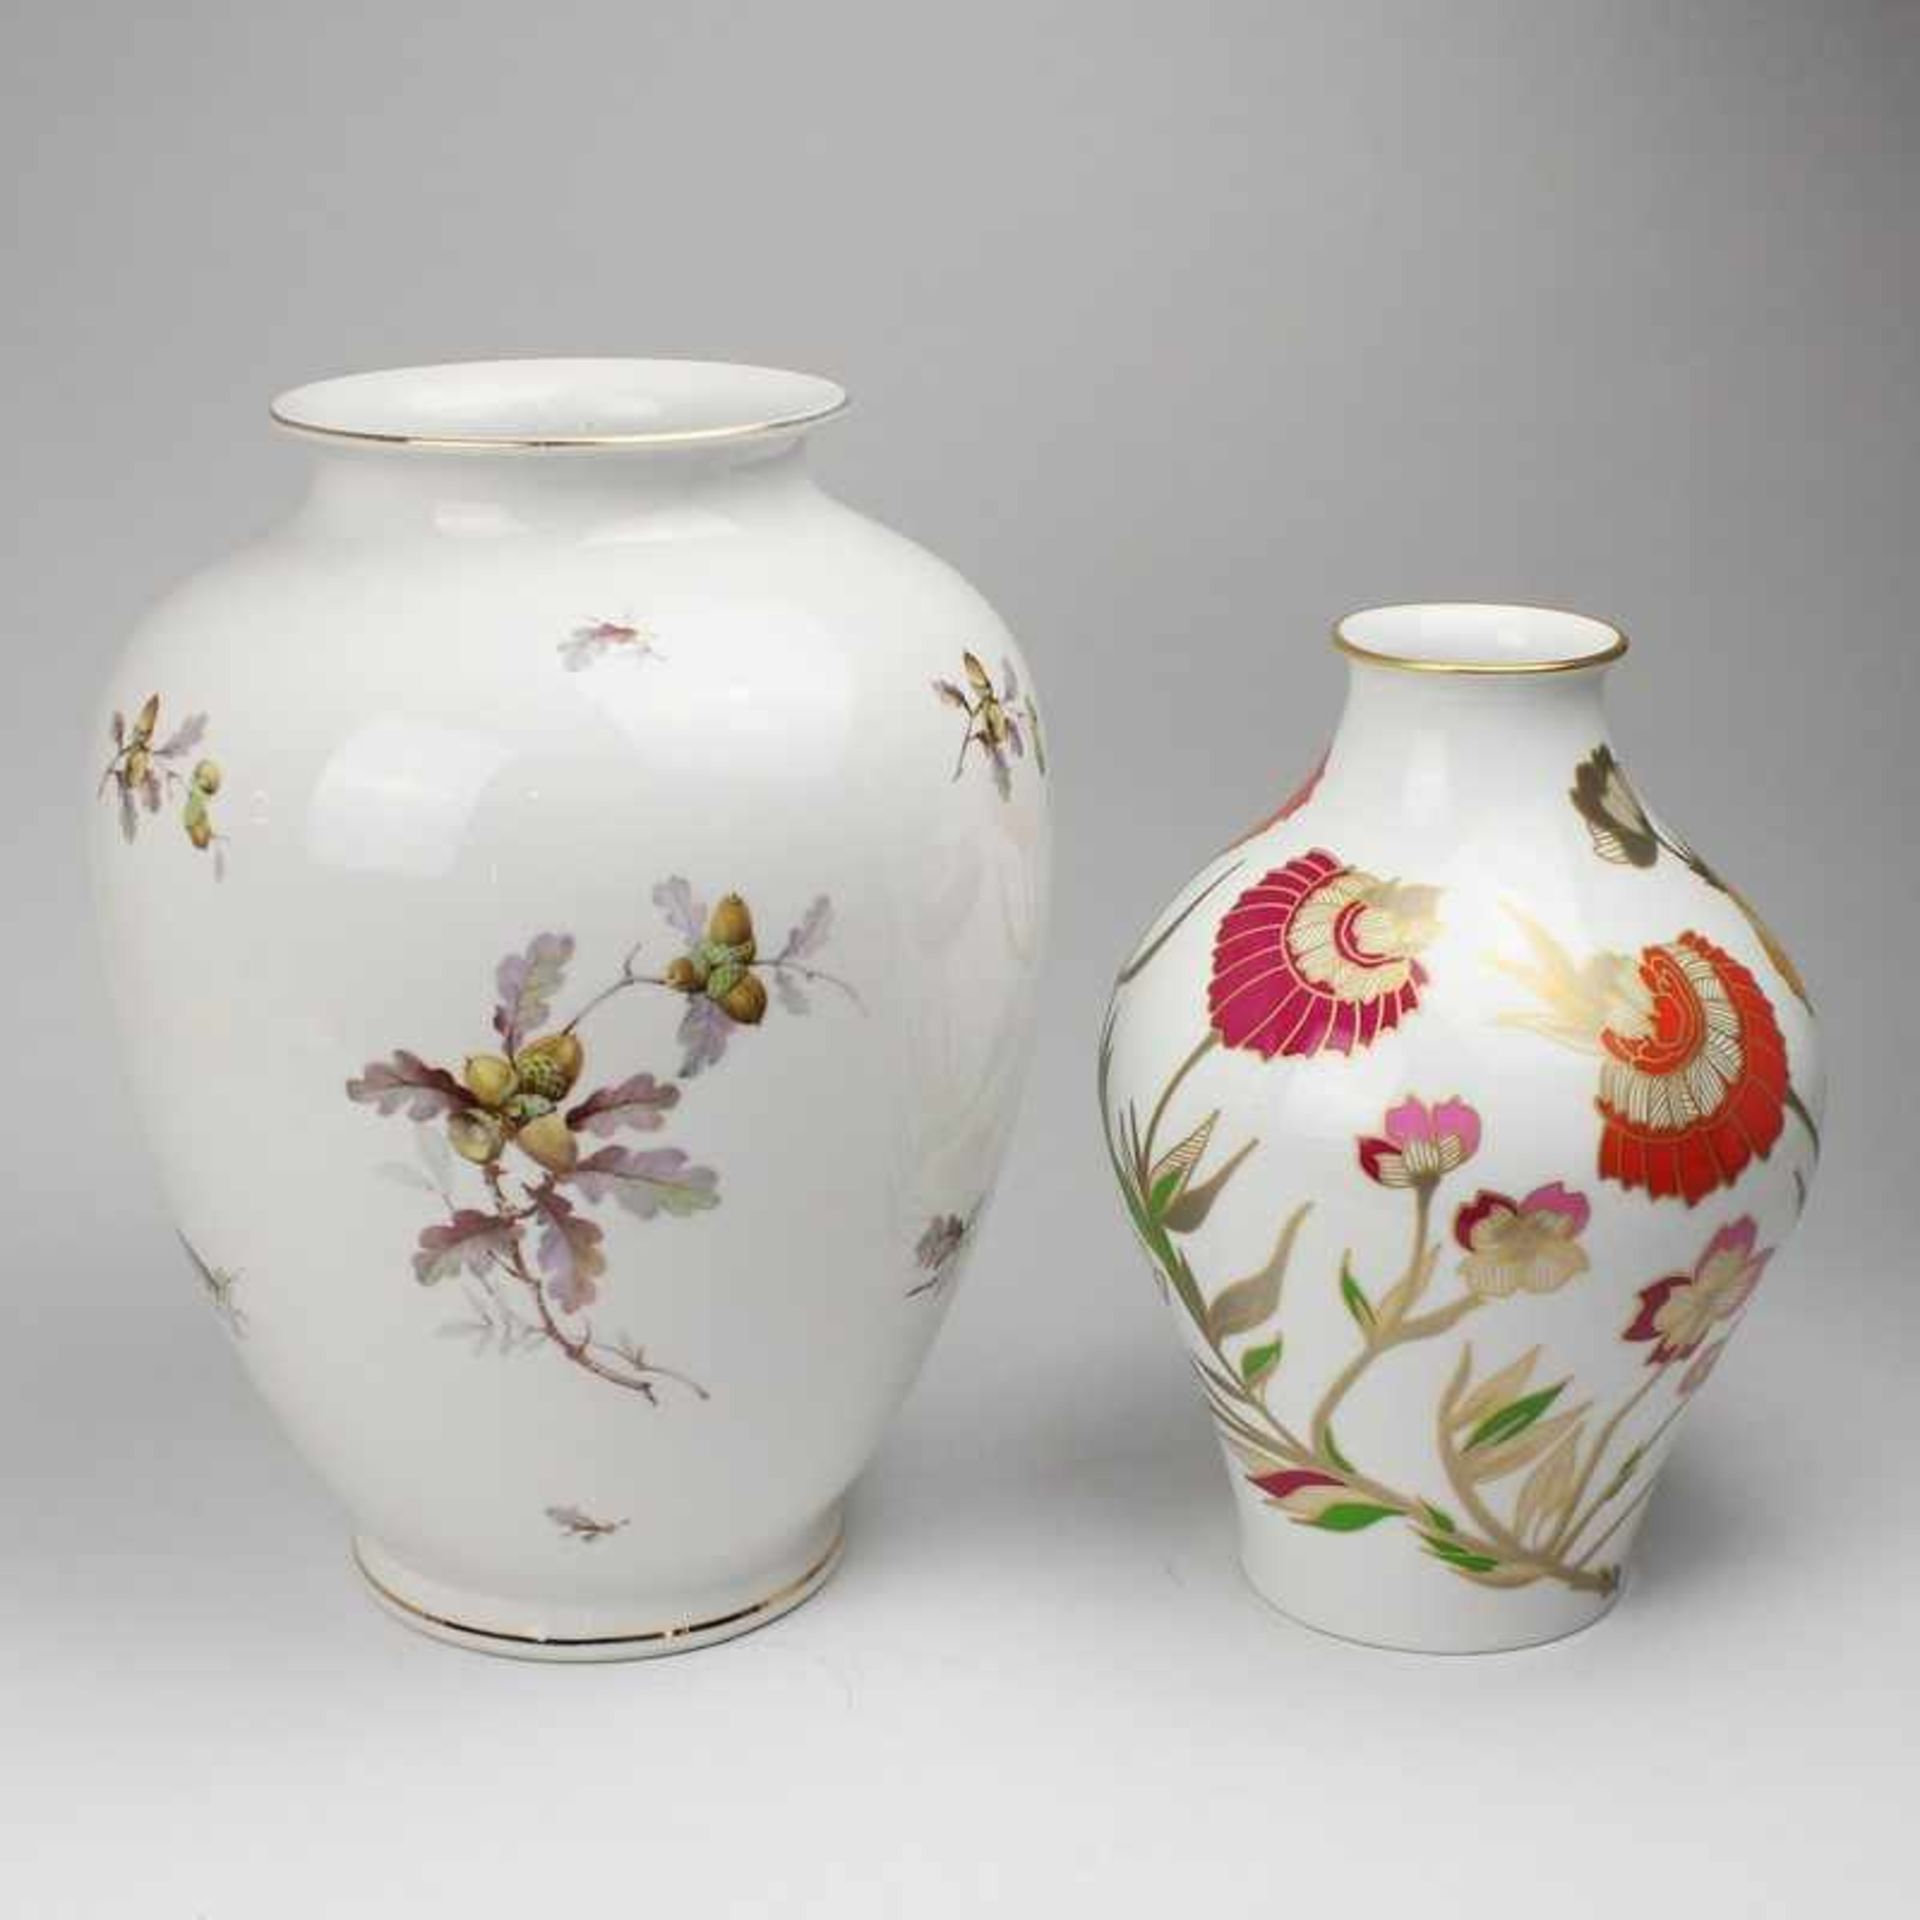 Hutschenreuther - Vase nach 1969, grüne Löwenmarke, Balusterform, stilisierter Blütendekor; dazu: